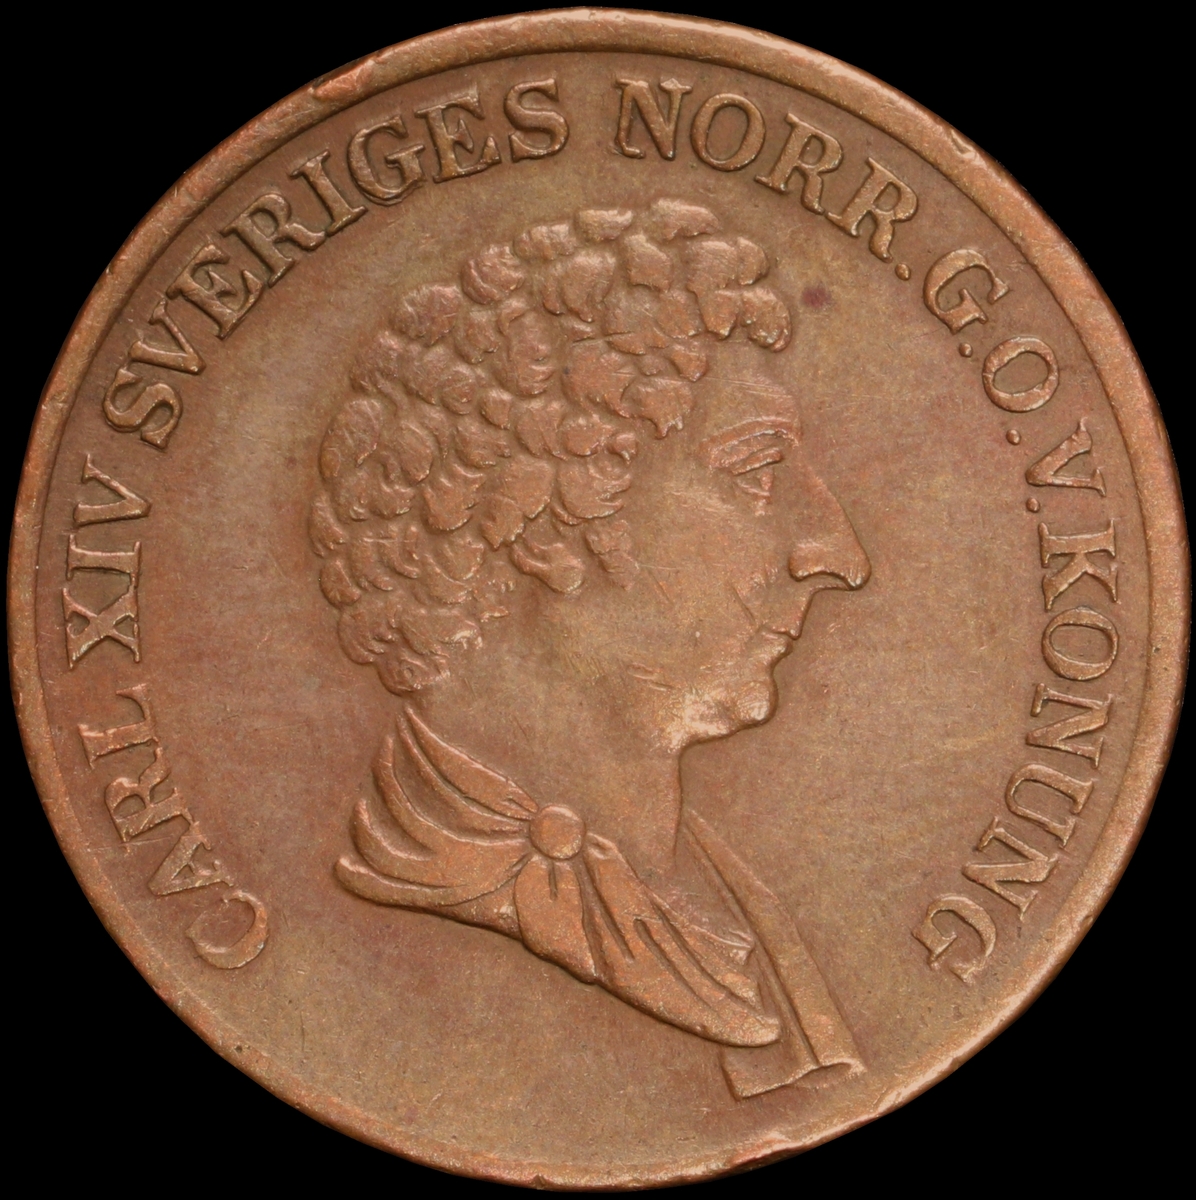 Mynt med valören 1 skilling banco. Åtsidan har en bild på Kung Karl XIV Johan. Frånsidan visar valören, två korslagda pilar samt en växtkrans.